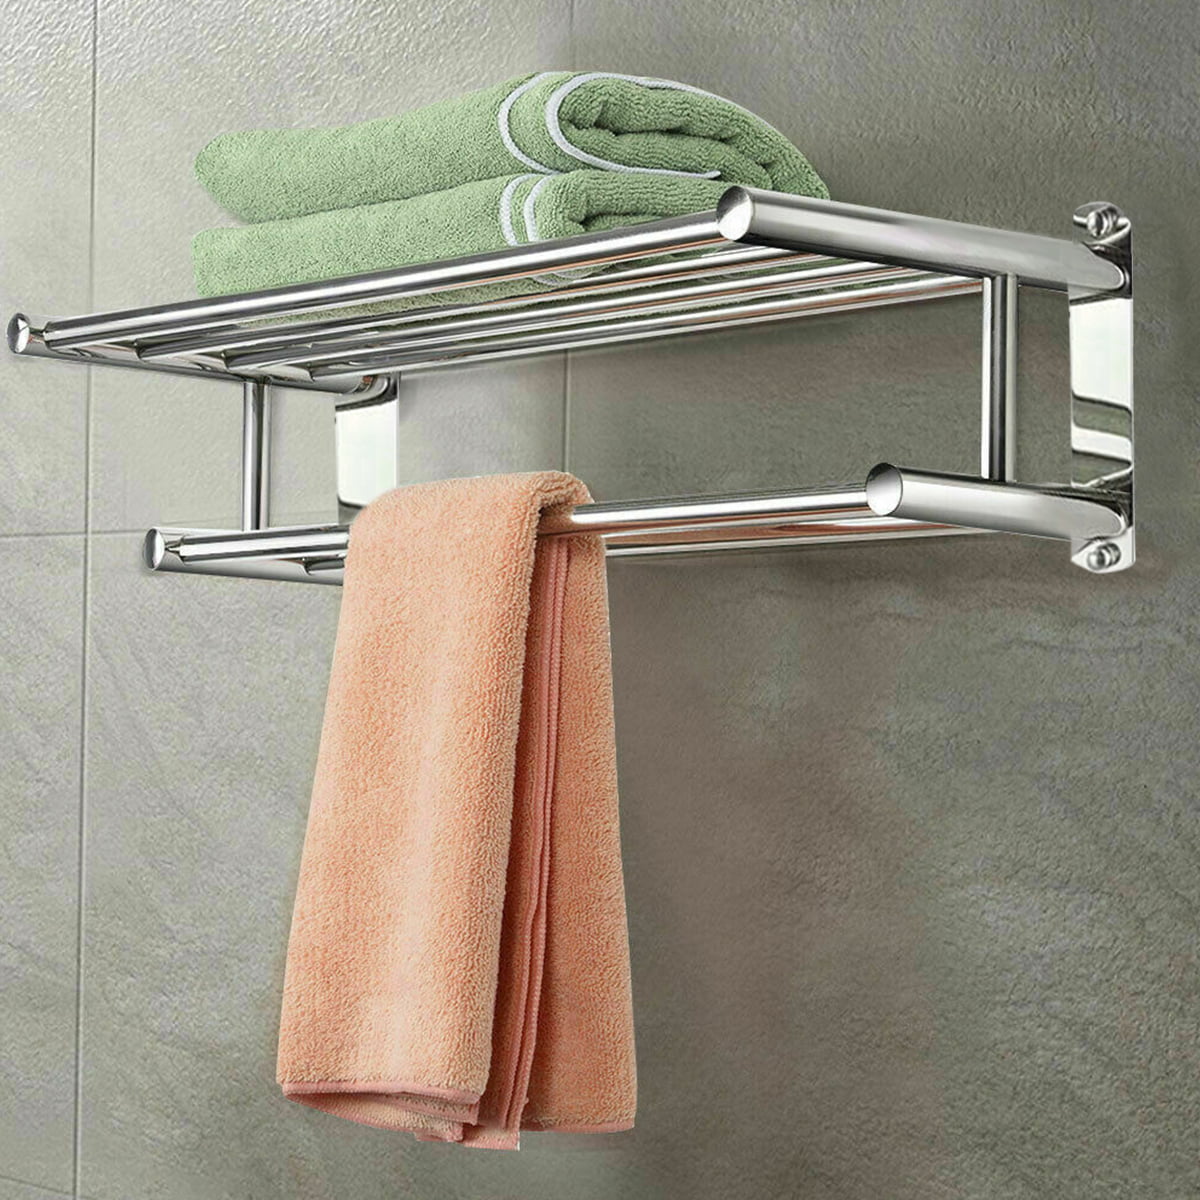 cinderellaphoto co kr Bathroom Accessories Bath 3 Tier Stainless Steel 